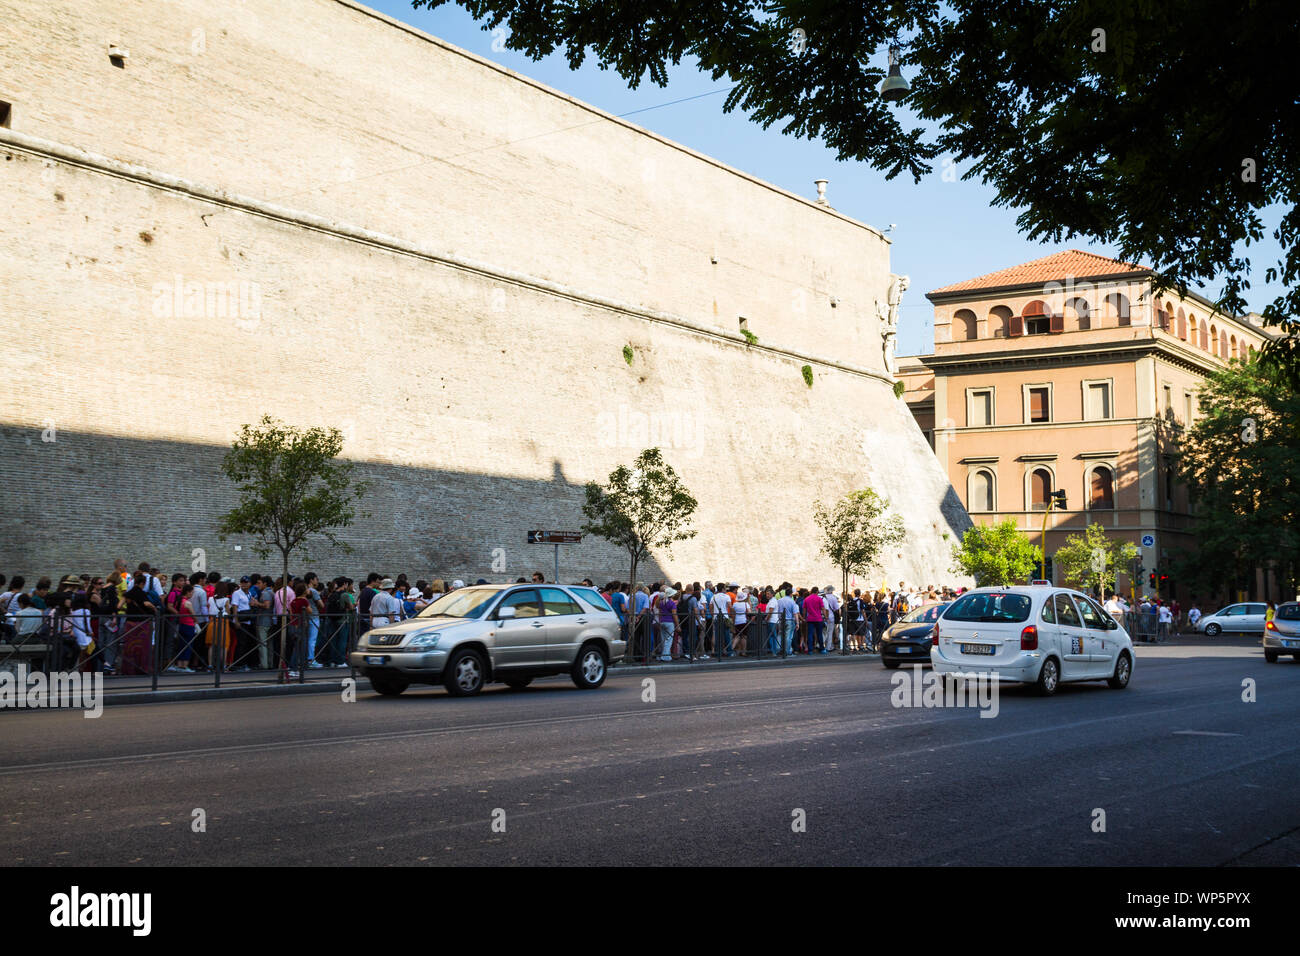 Ita: turisti attendere per l'ingresso al Museo del Vaticano a Roma GER: Touristen warten auf den Eintritt ins Museo Vatikanische nella ROM Foto Stock